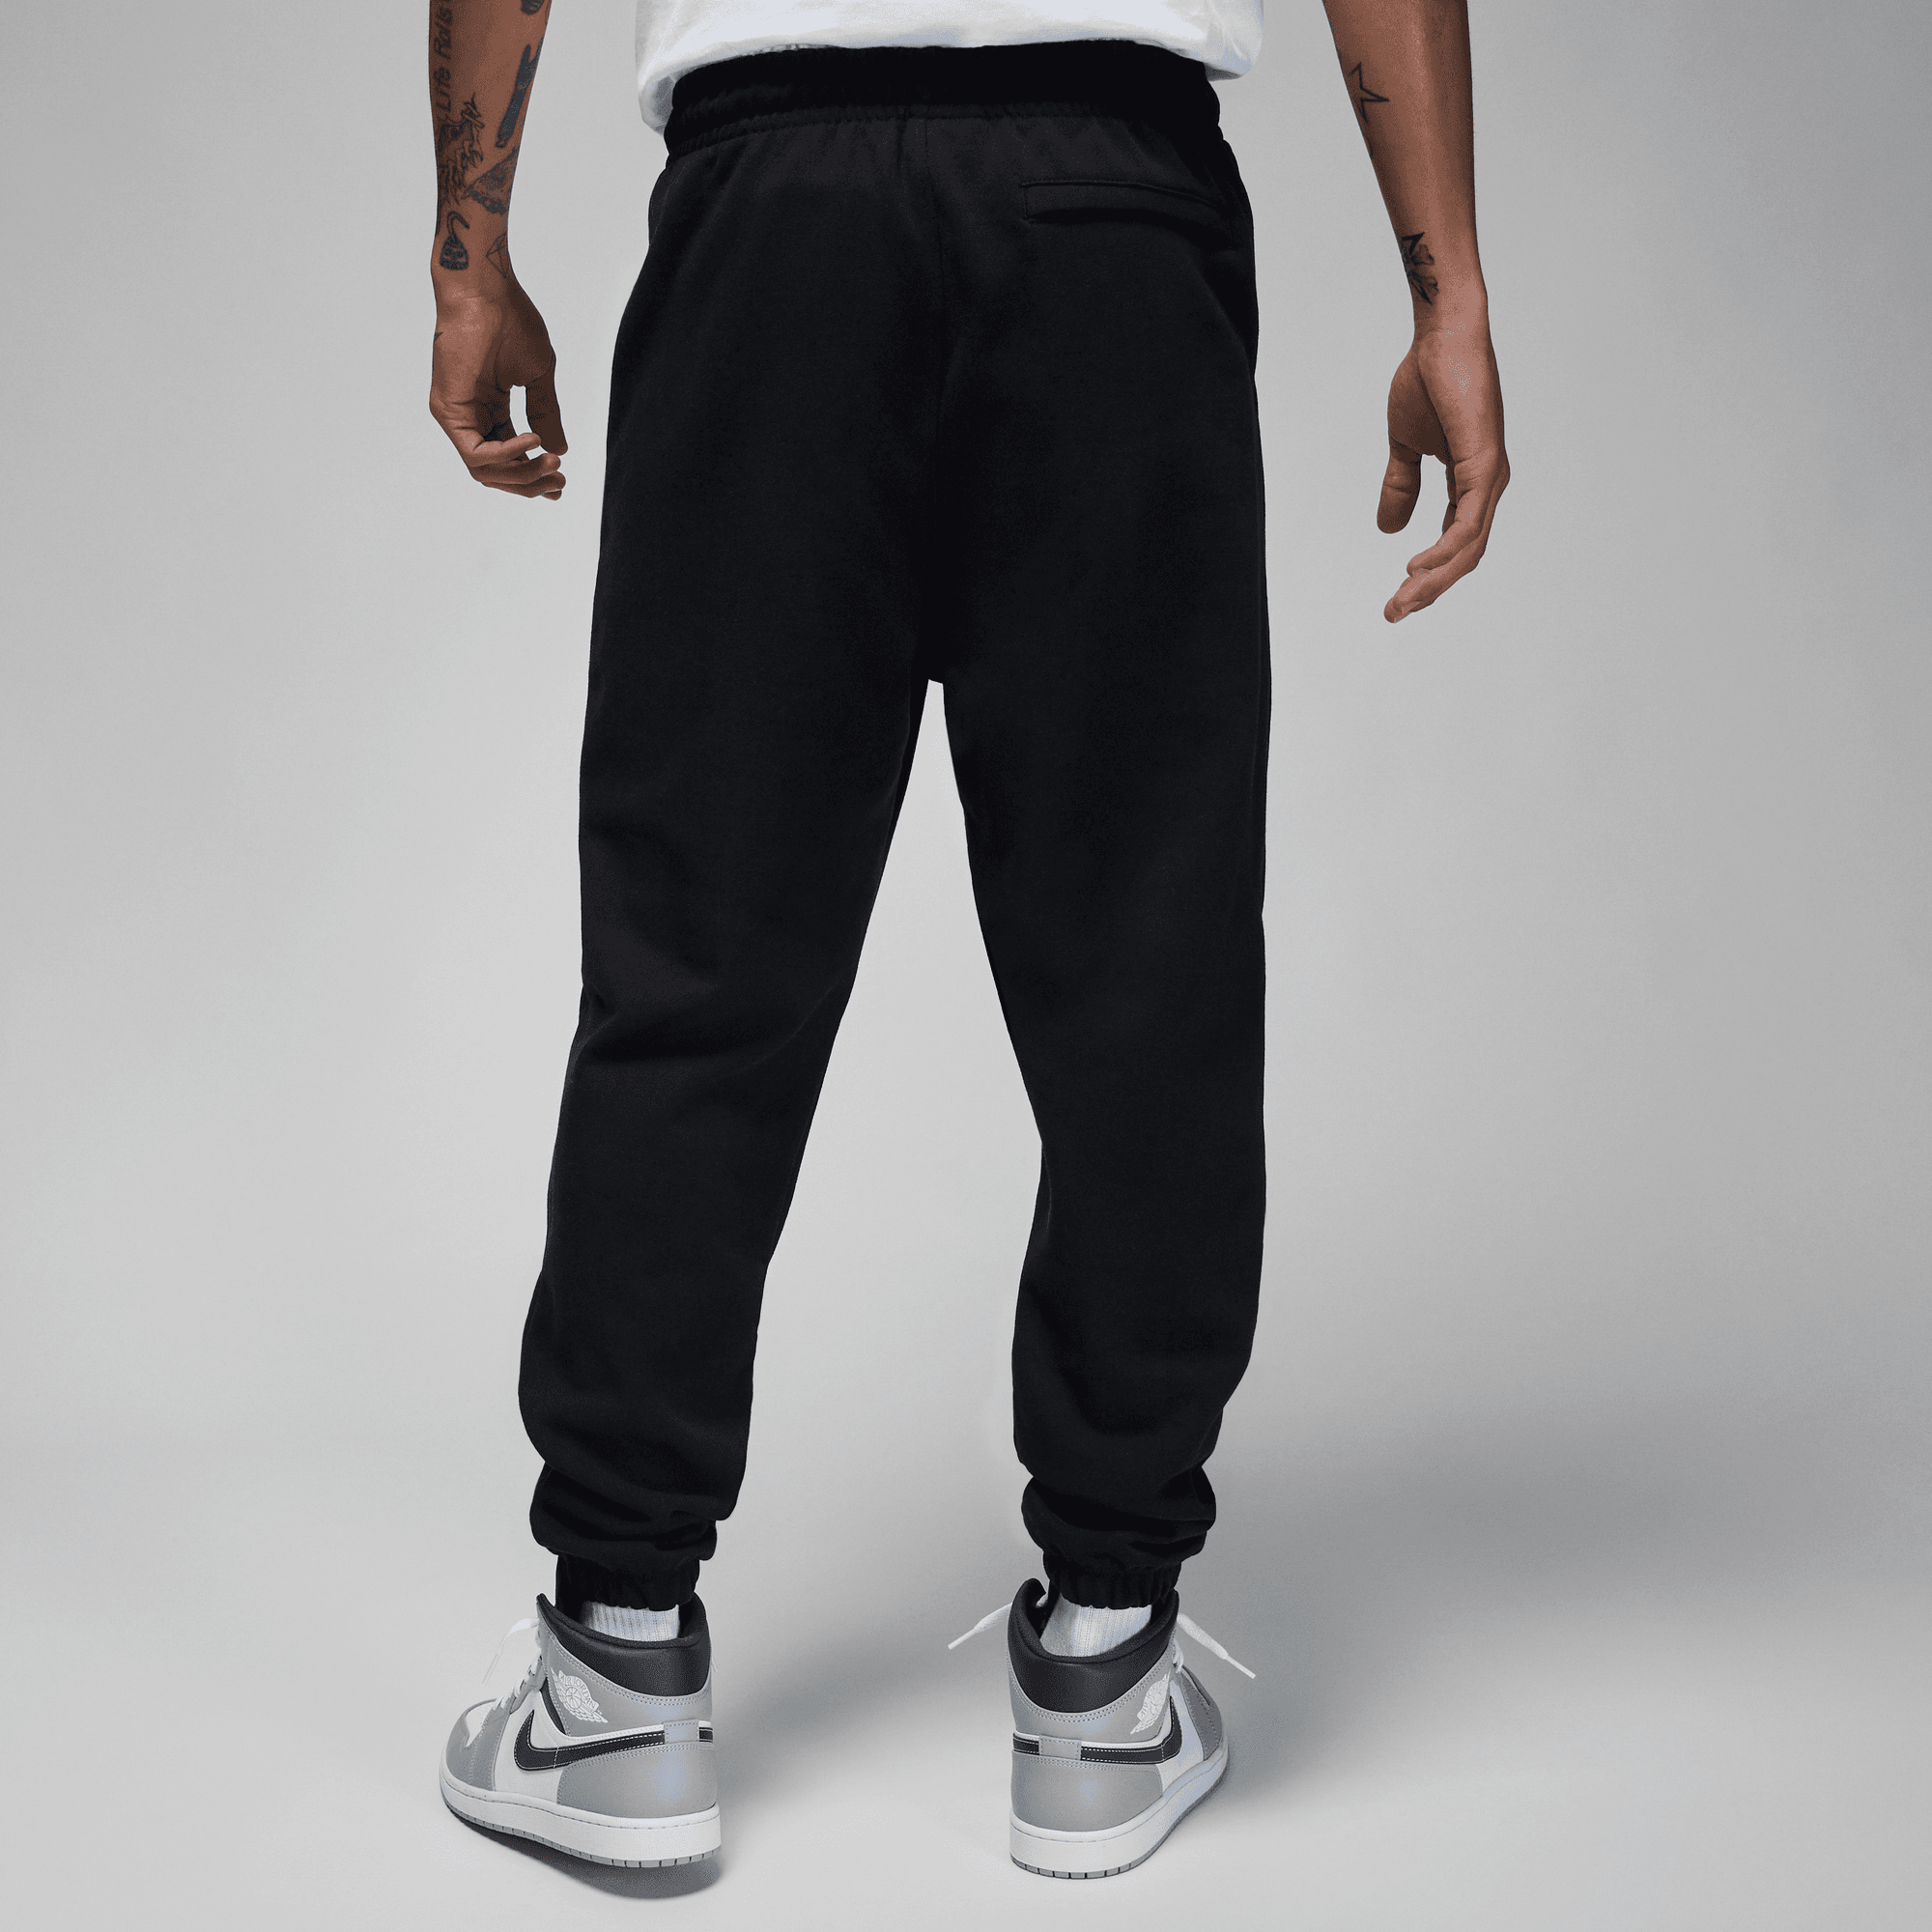 Nike Jordan Essentials (Black/Sail) – Concepts